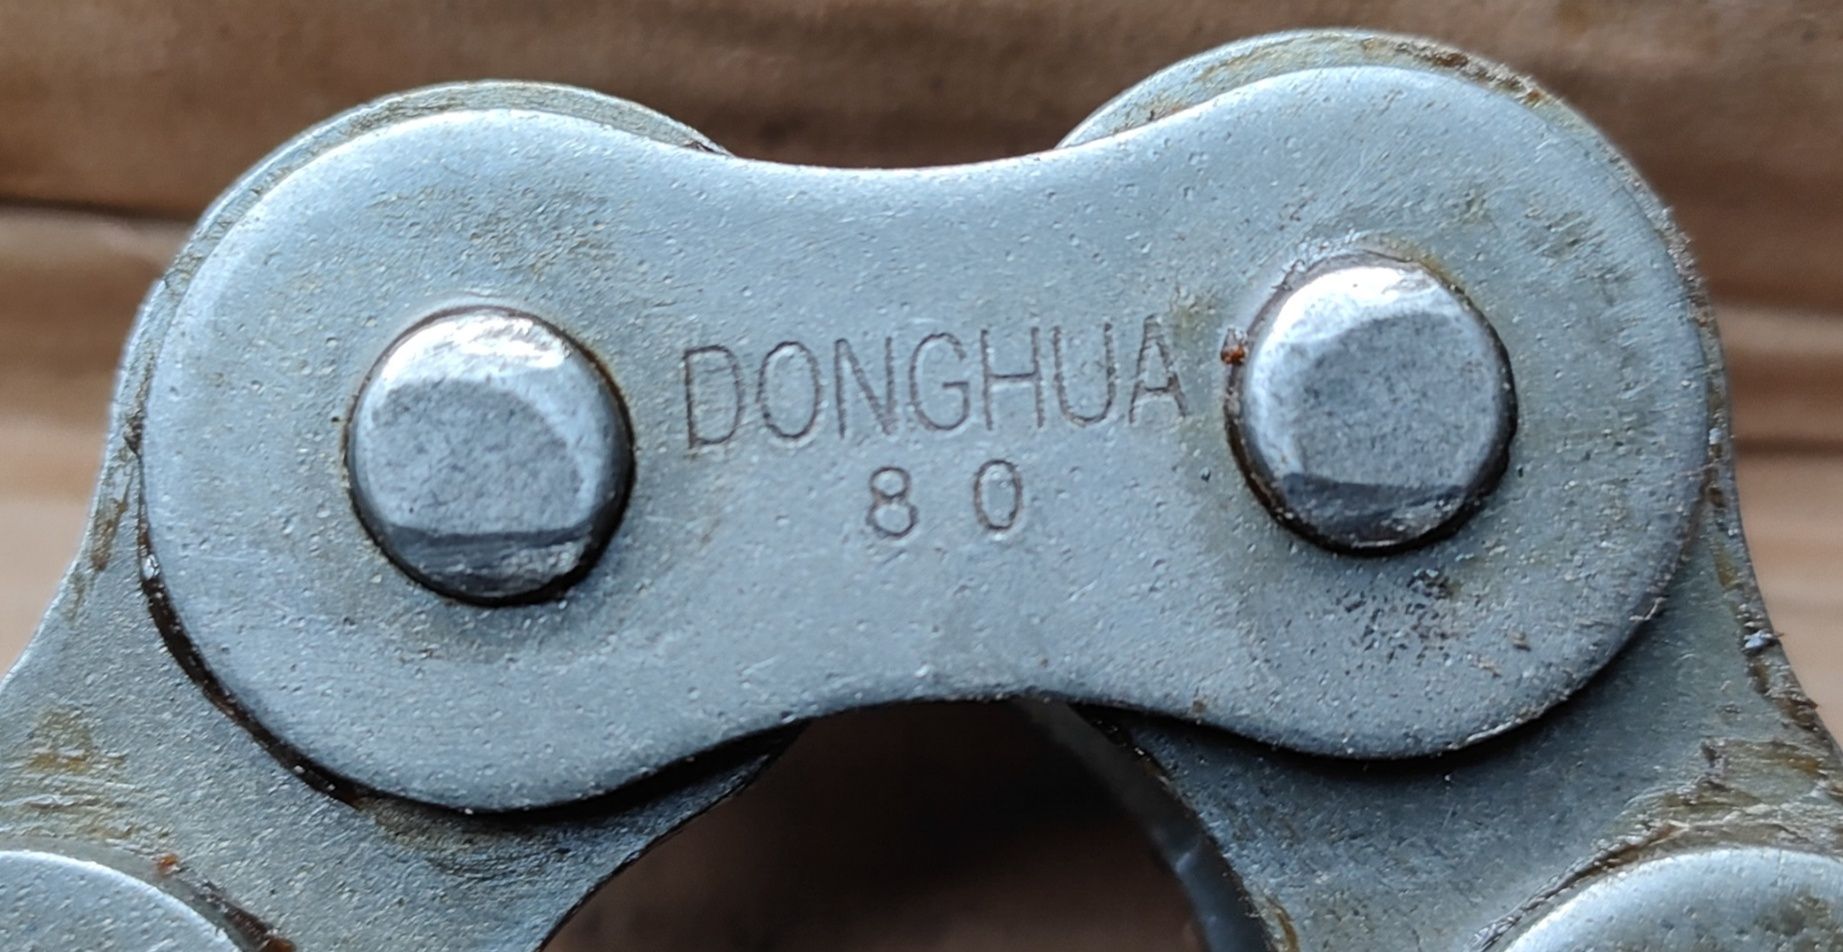 Łańcuch calowy przemysłowy donghua 5m